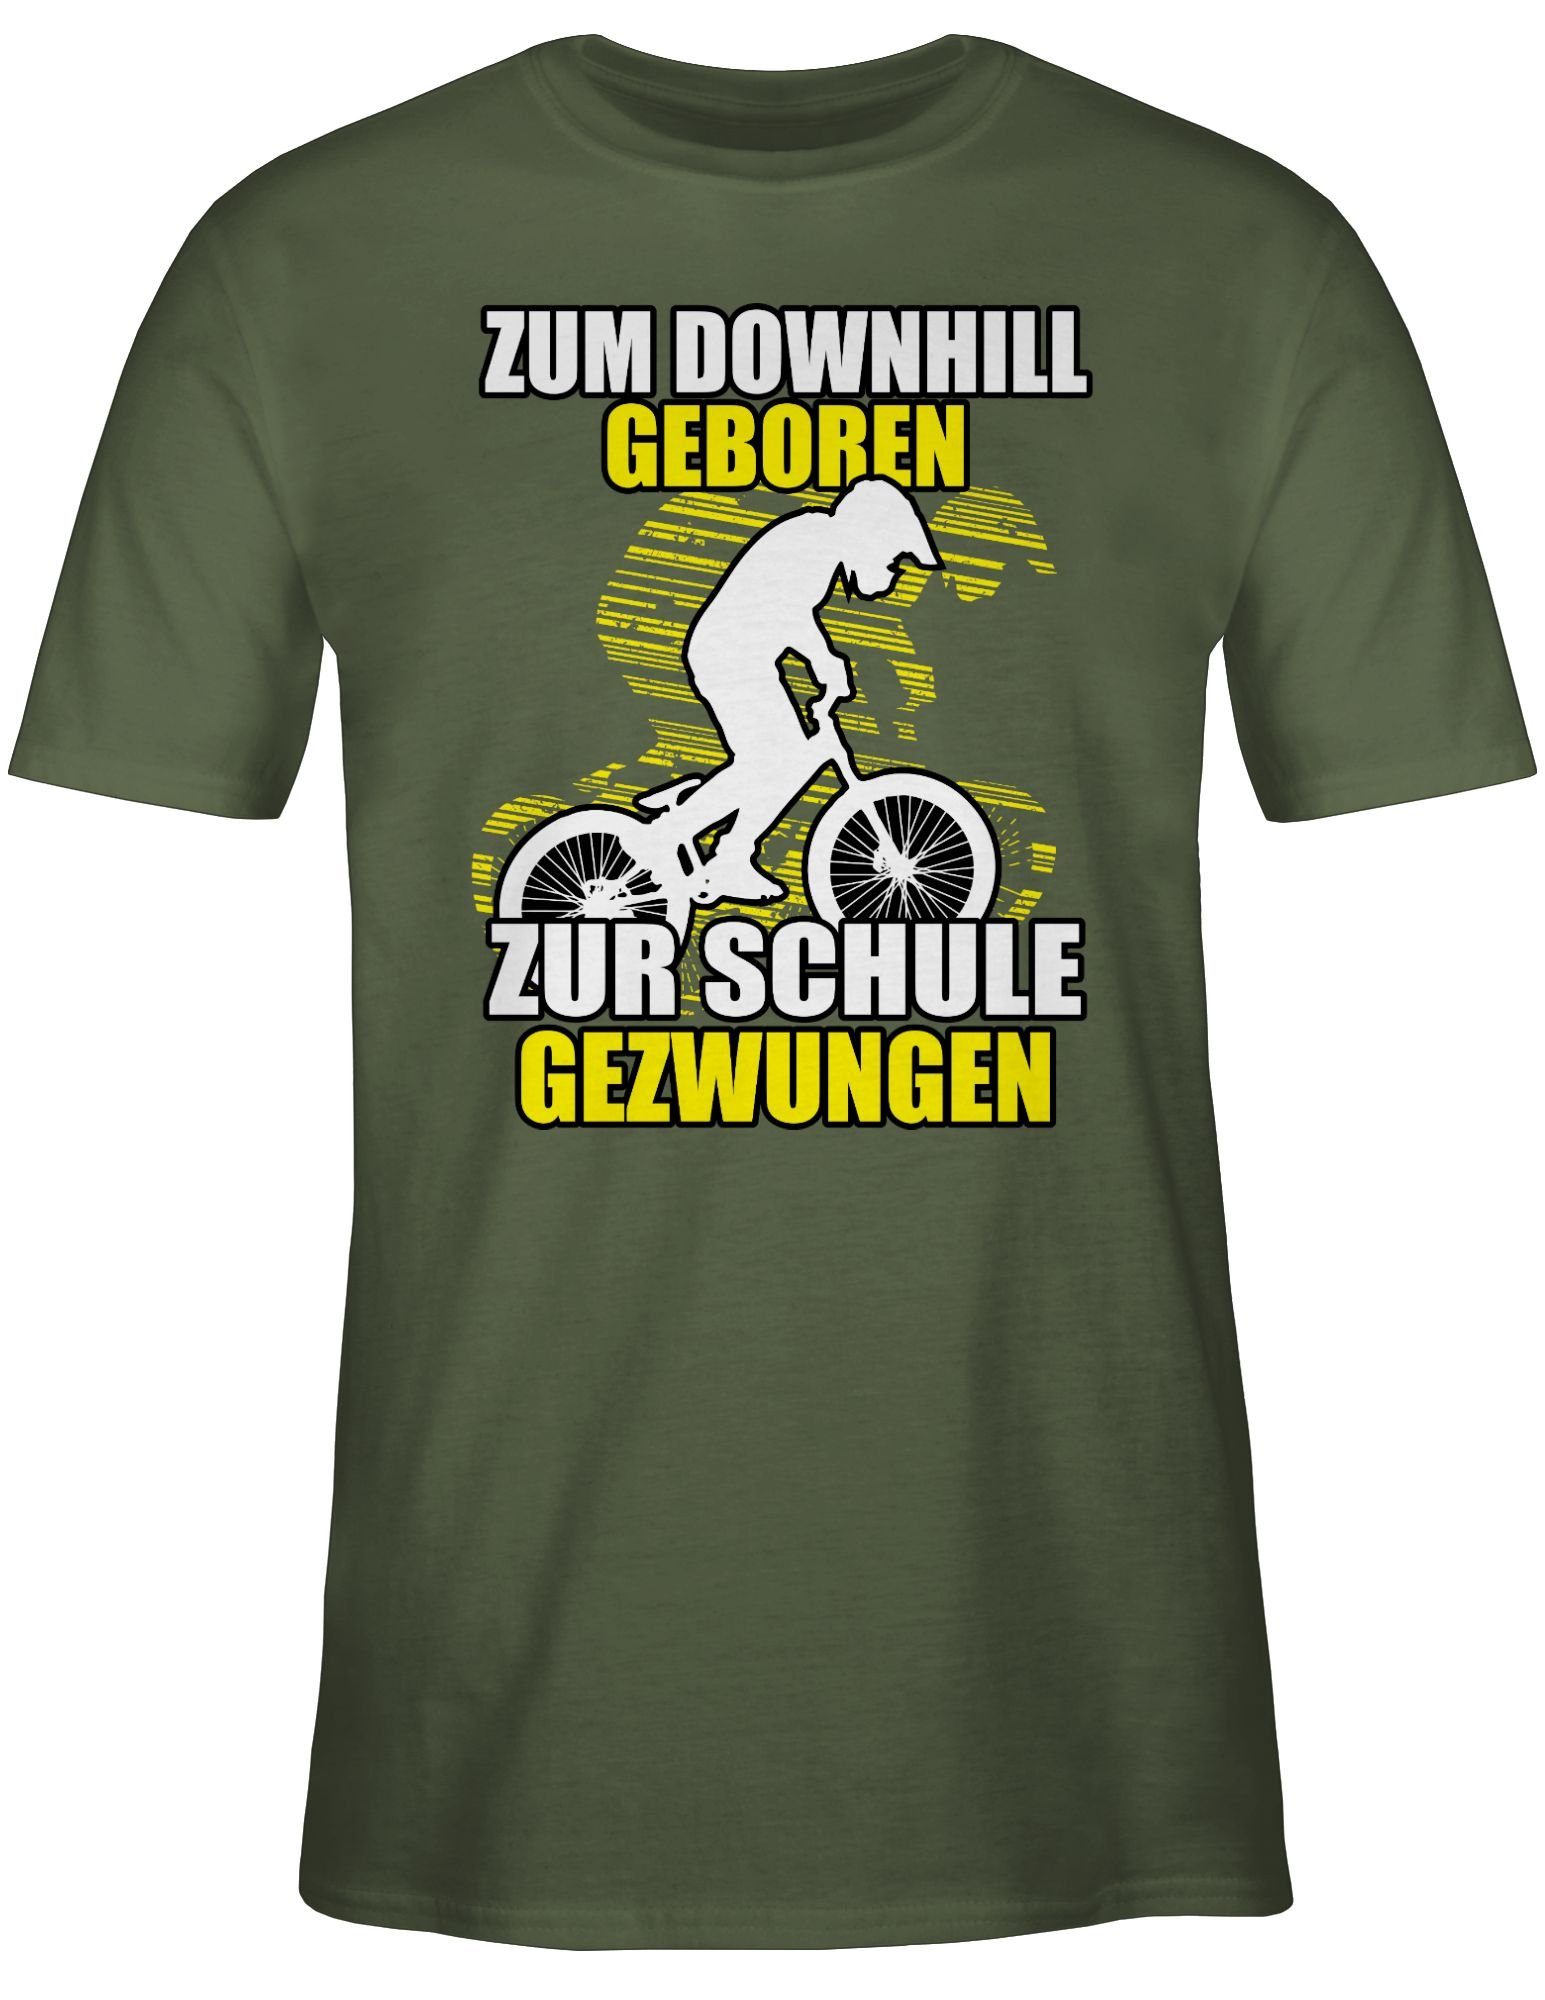 Zum Army Downhill zur geboren Shirtracer Radsport Bekleidung Fahrrad T-Shirt Schule 03 gezwungen Grün